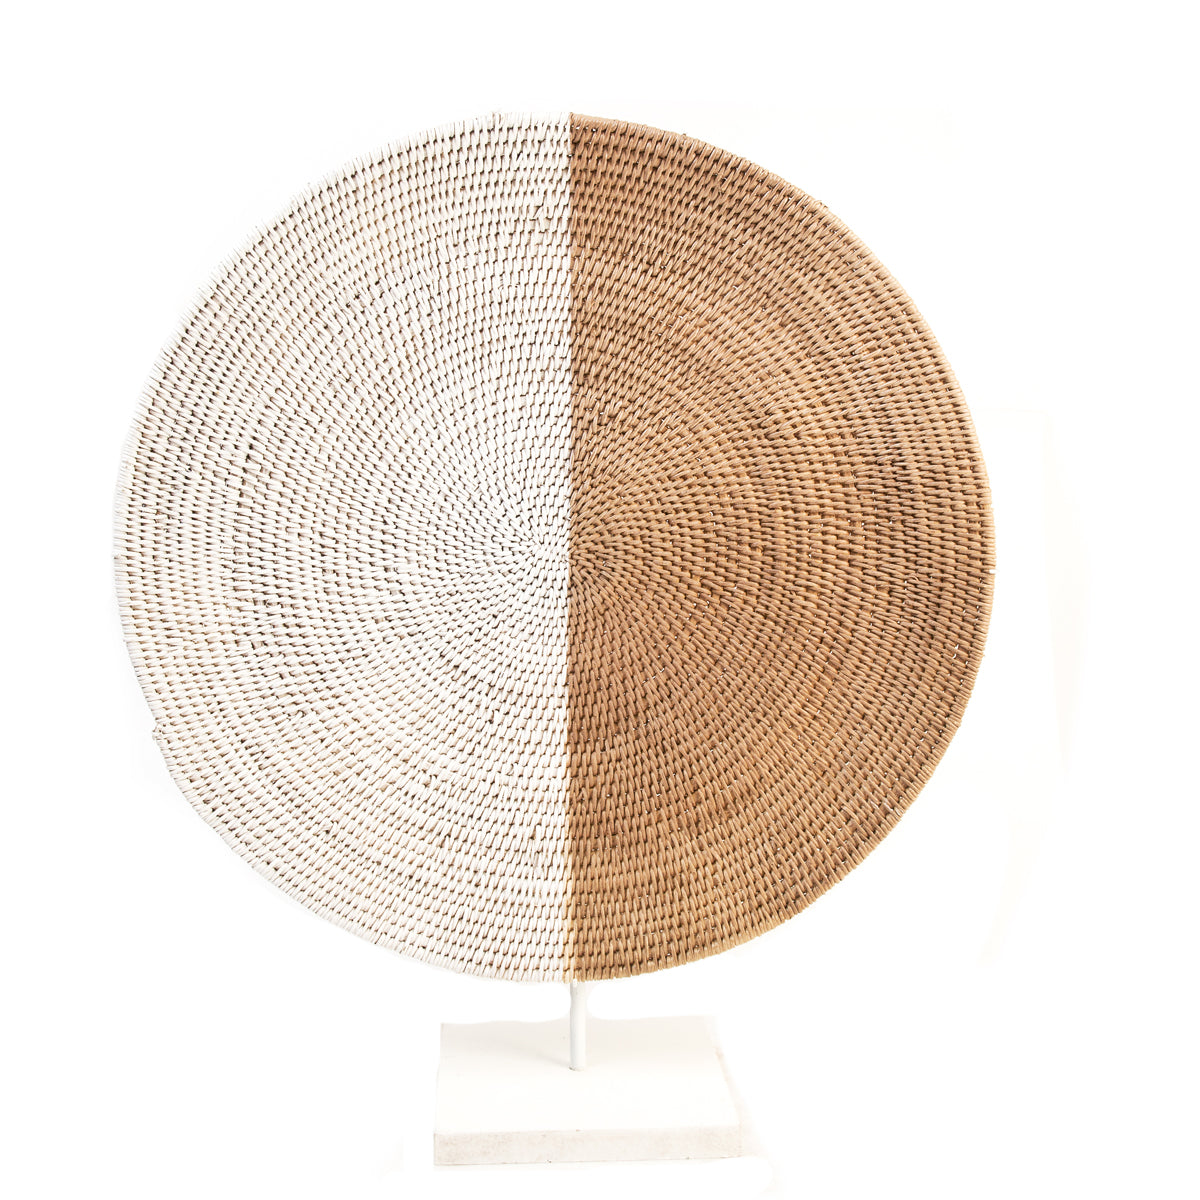 botanicalboysuk Painted Makenge Basket - Zambia - 25b